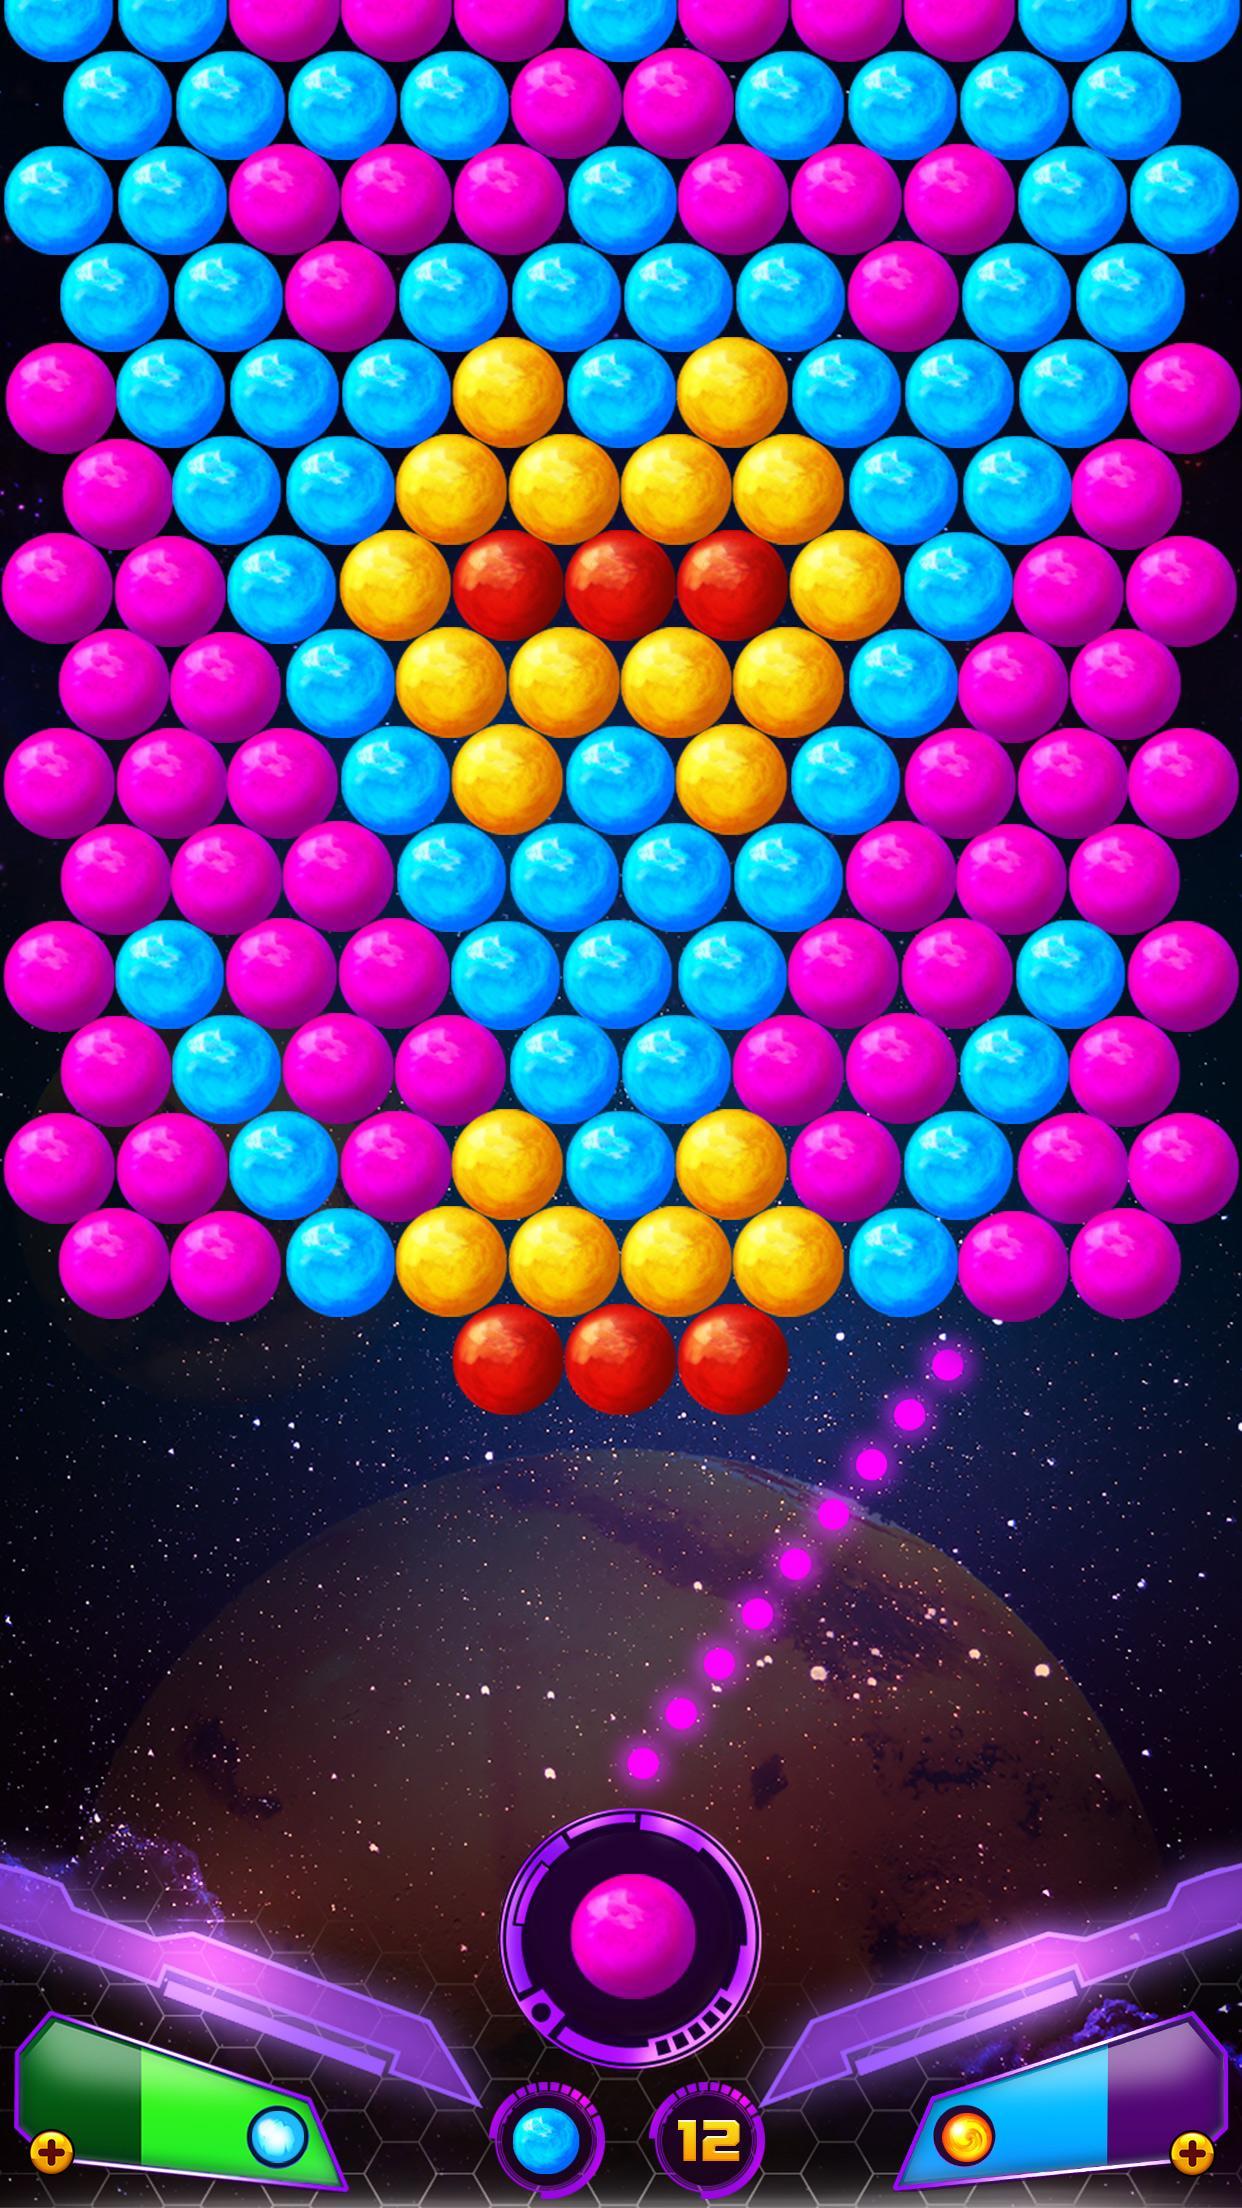 Screenshot 1 of Chispa de tirador de burbujas 